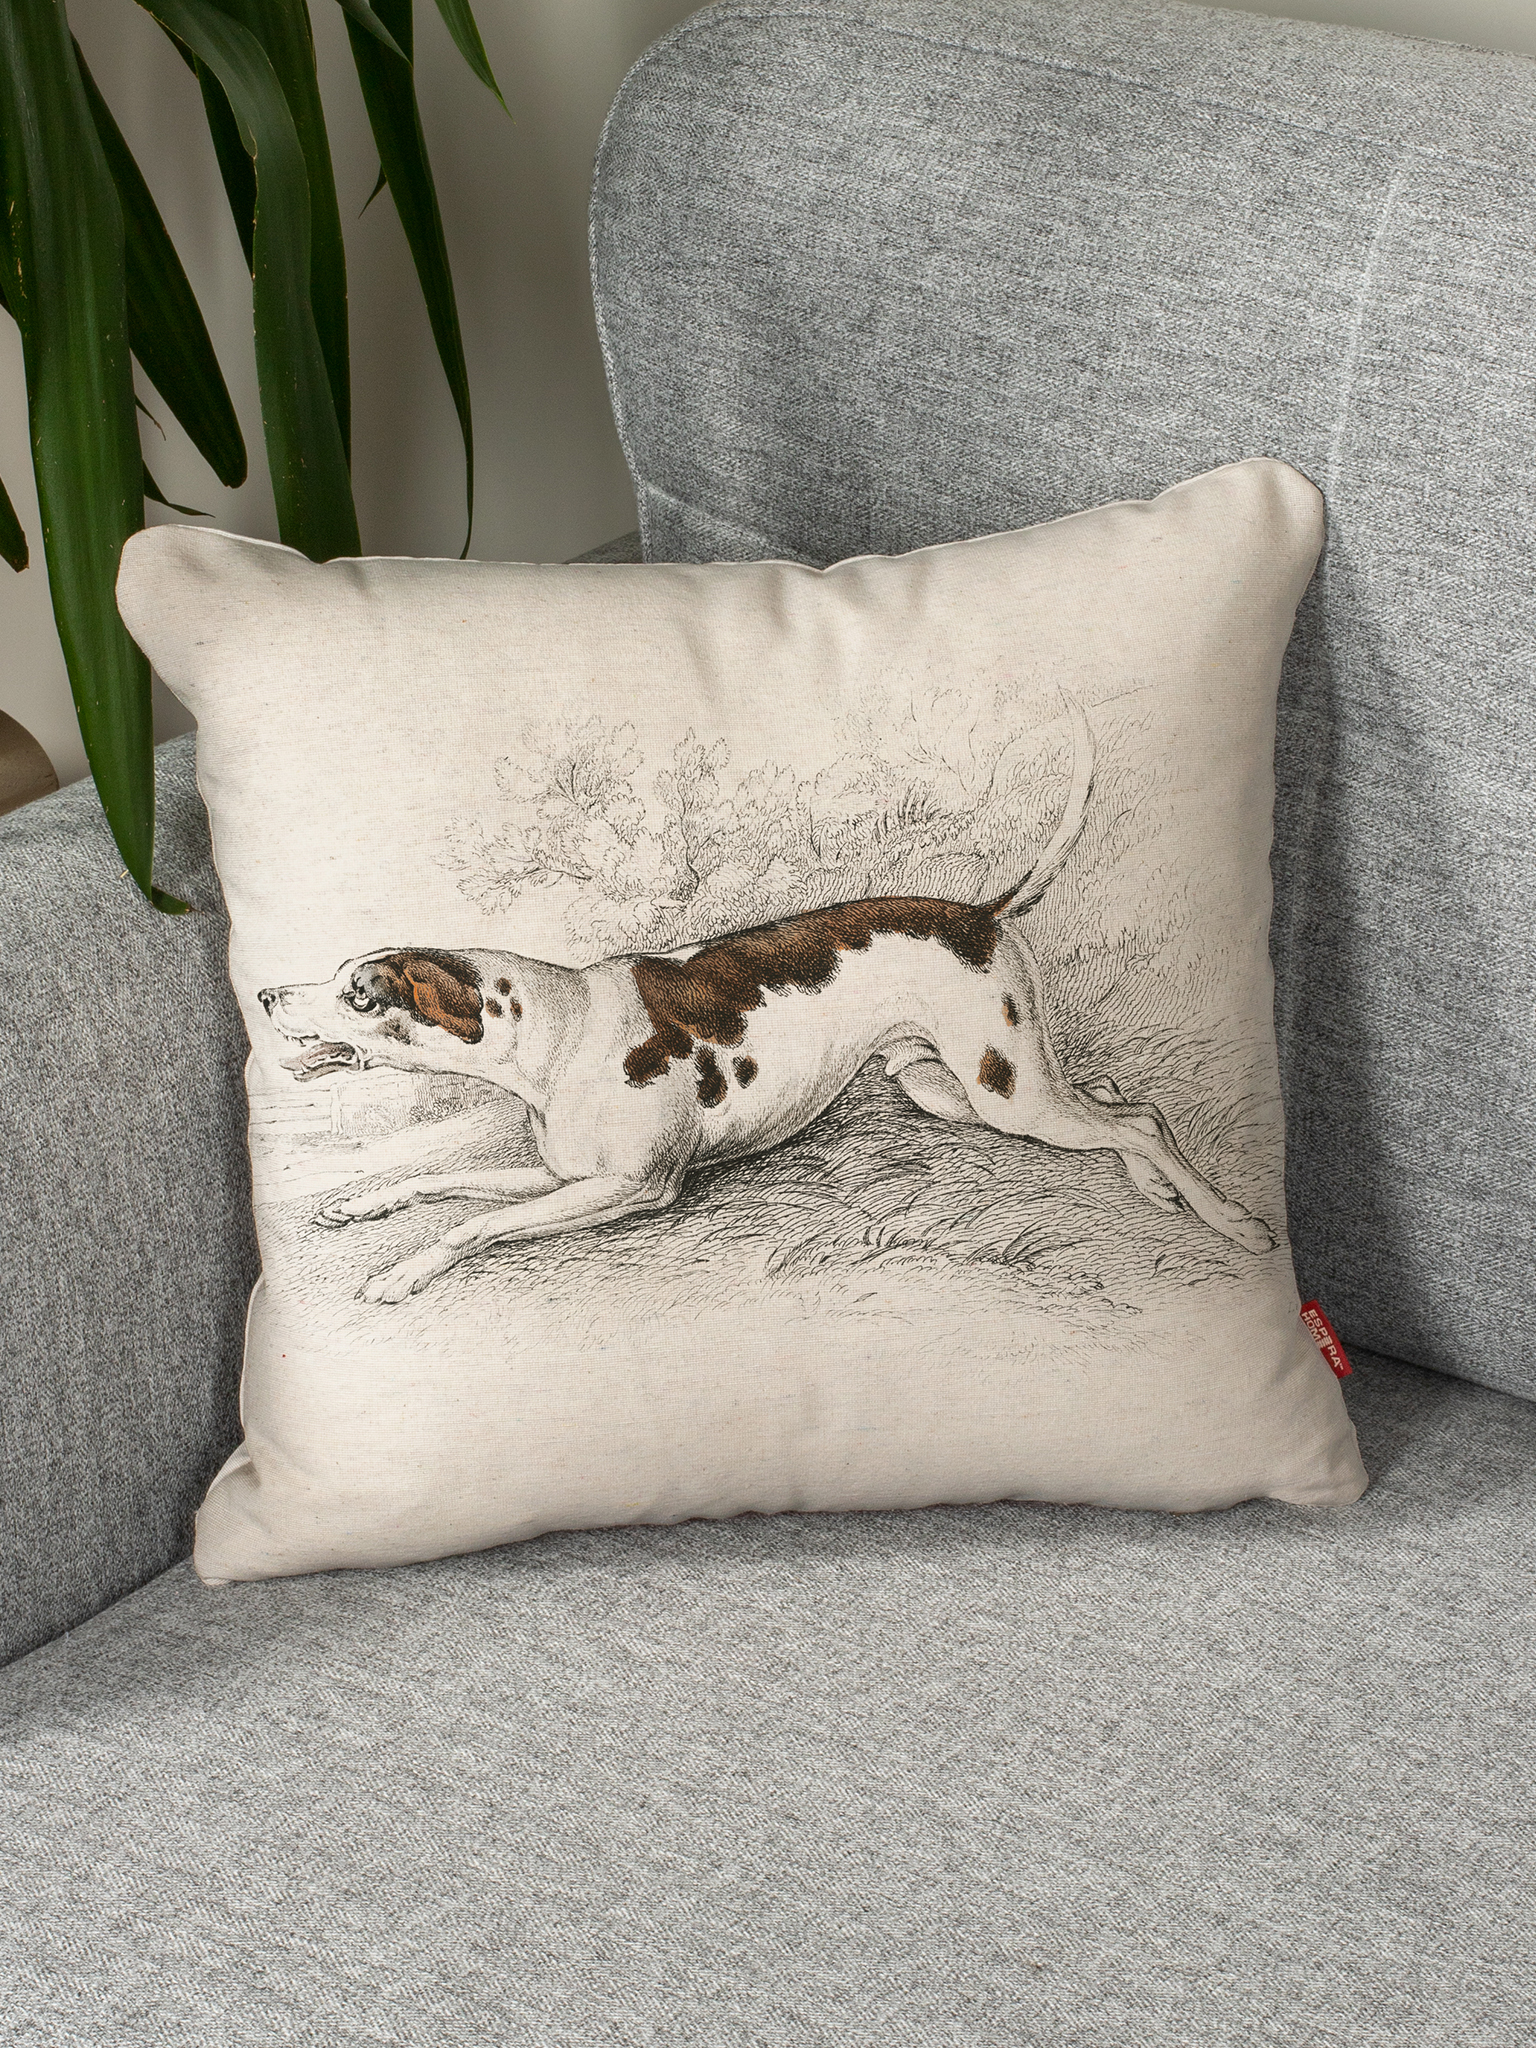 Декоративная подушка на диван • Deco / Деко •  Стюарт, Джеймс  Фоксхаунд 45 х 45 см